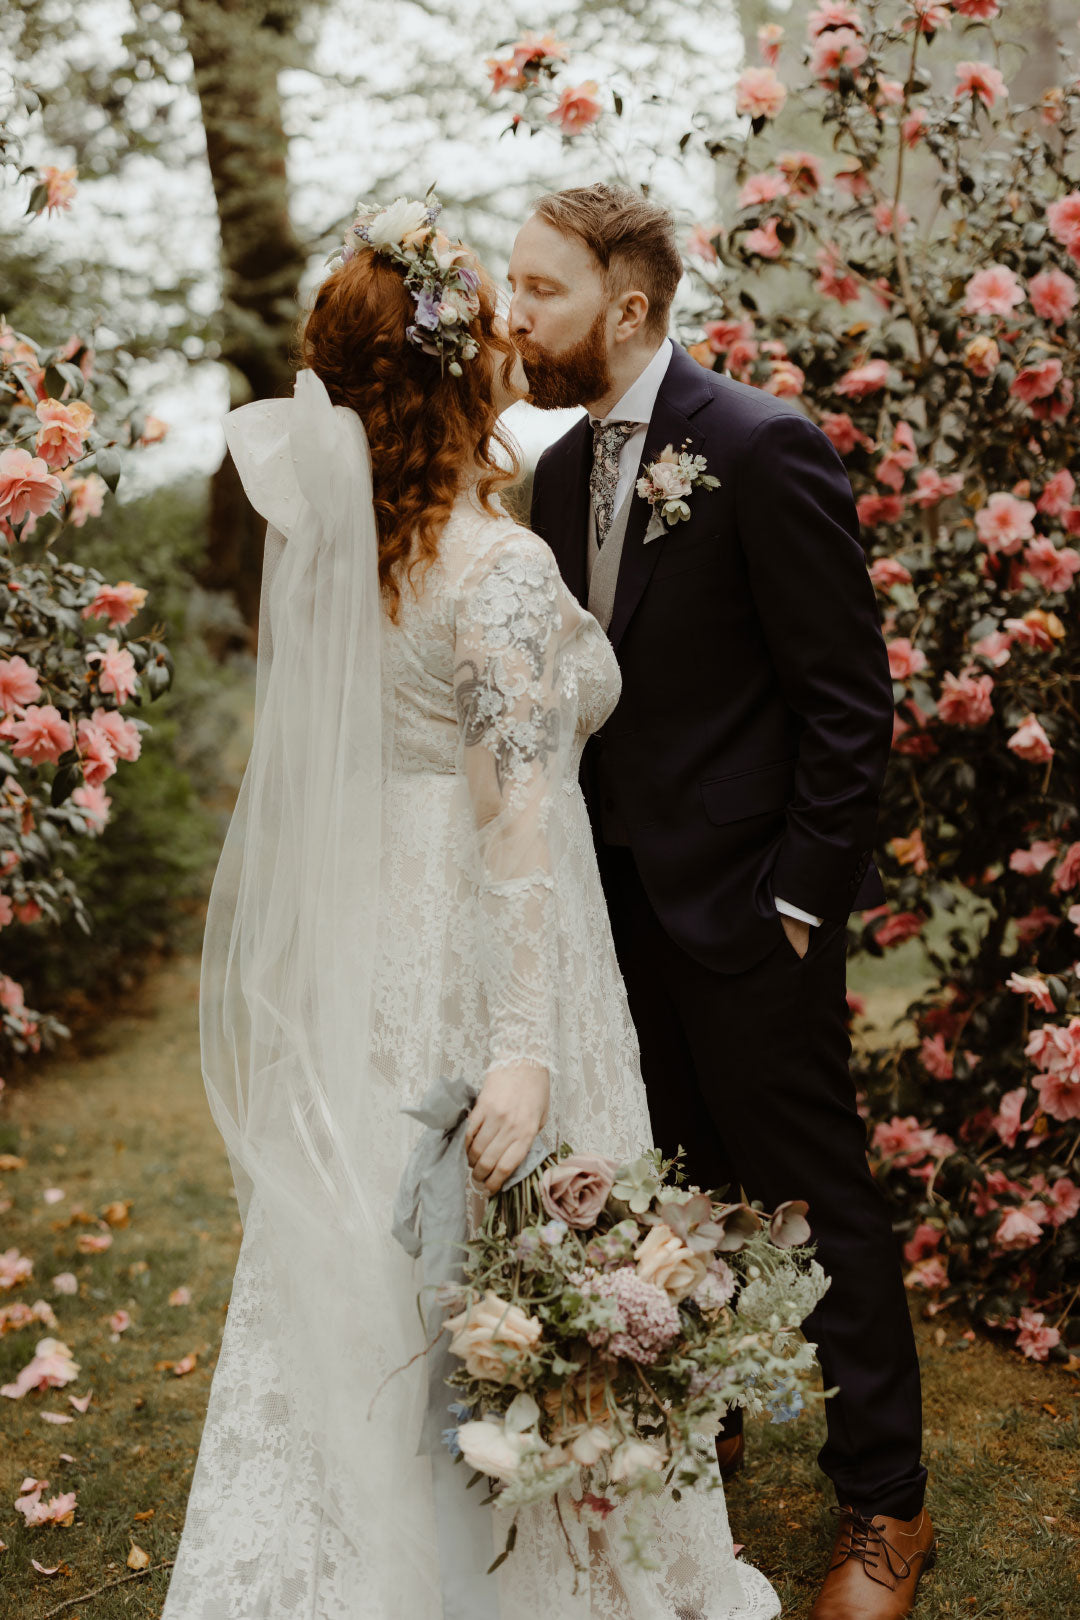 Bride and groom kissing in wedding venue garden